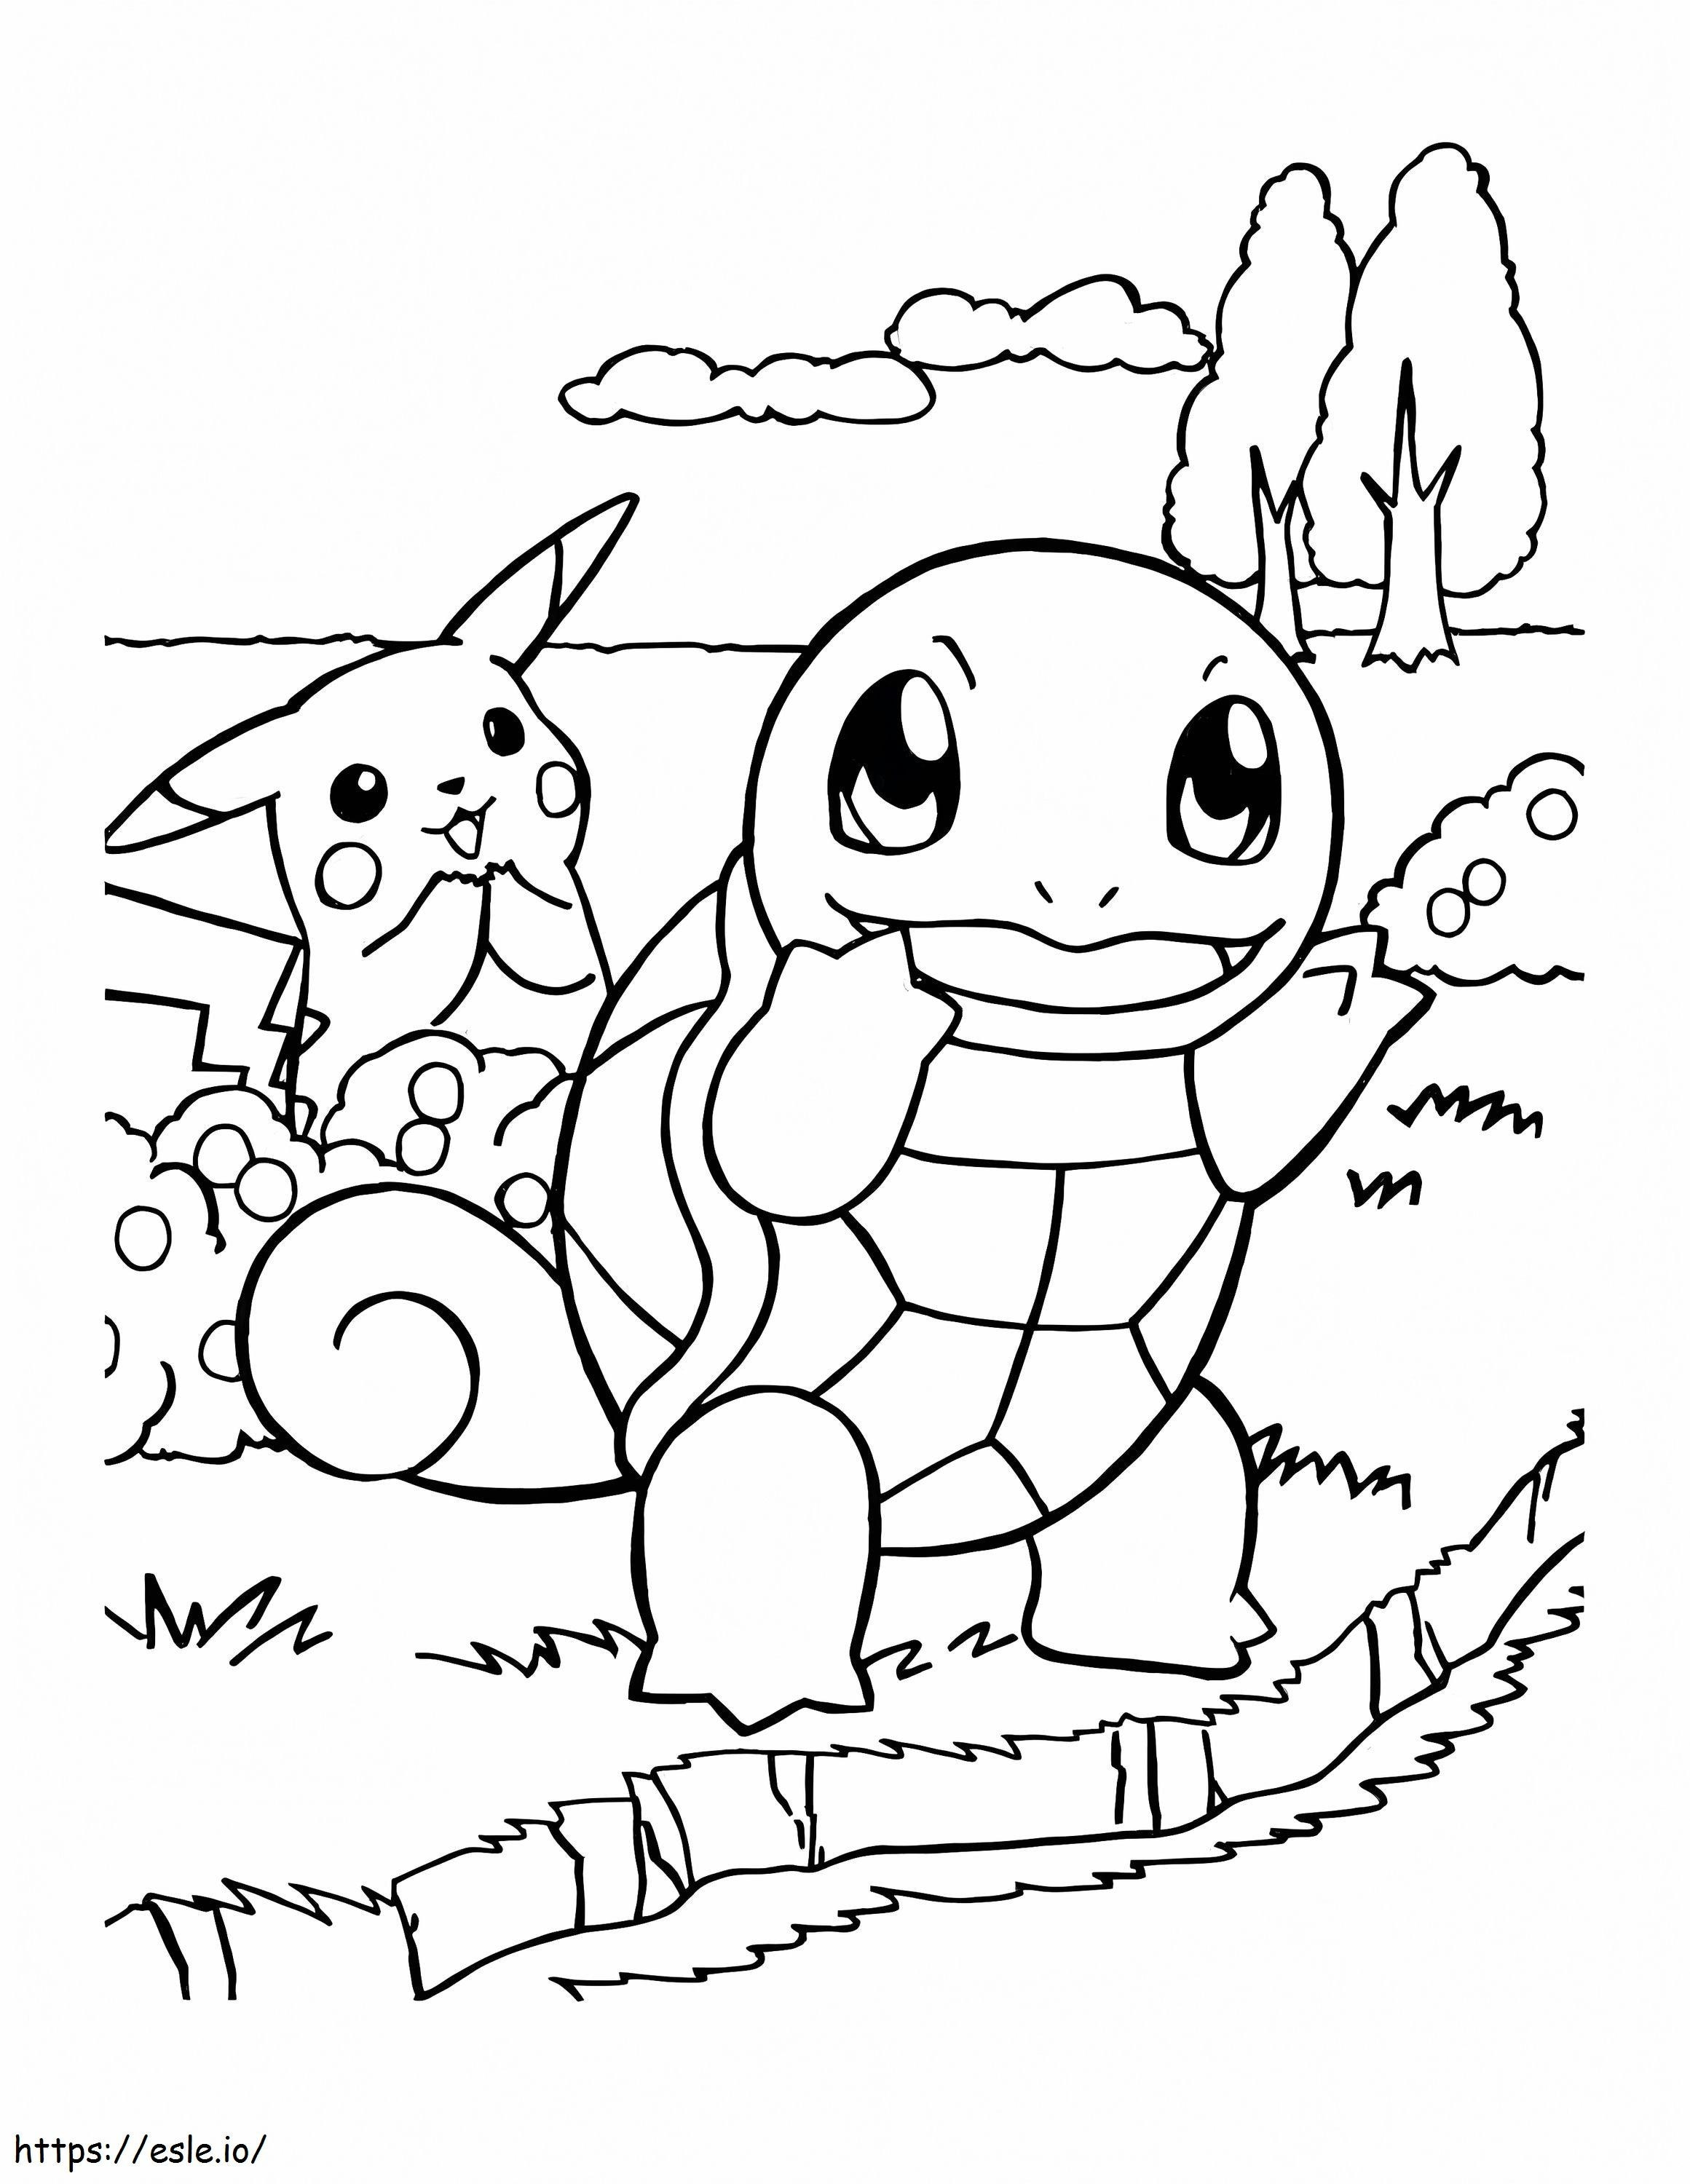 Coloriage Crapaud et Pikachu à imprimer dessin